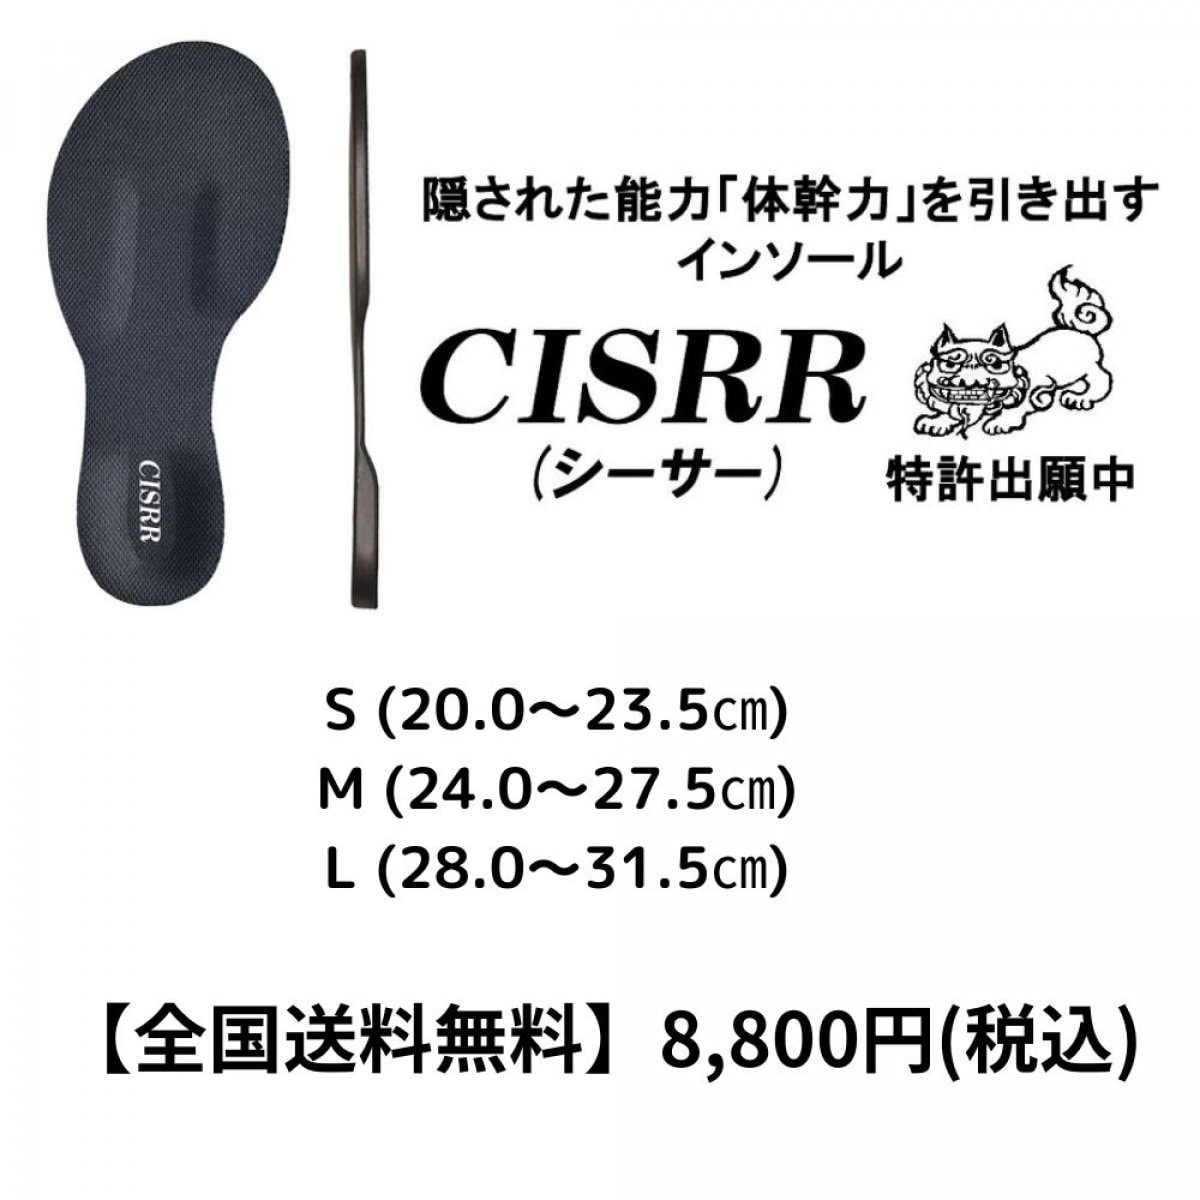 【全国送料無料】CISRR(シーサー)インソール